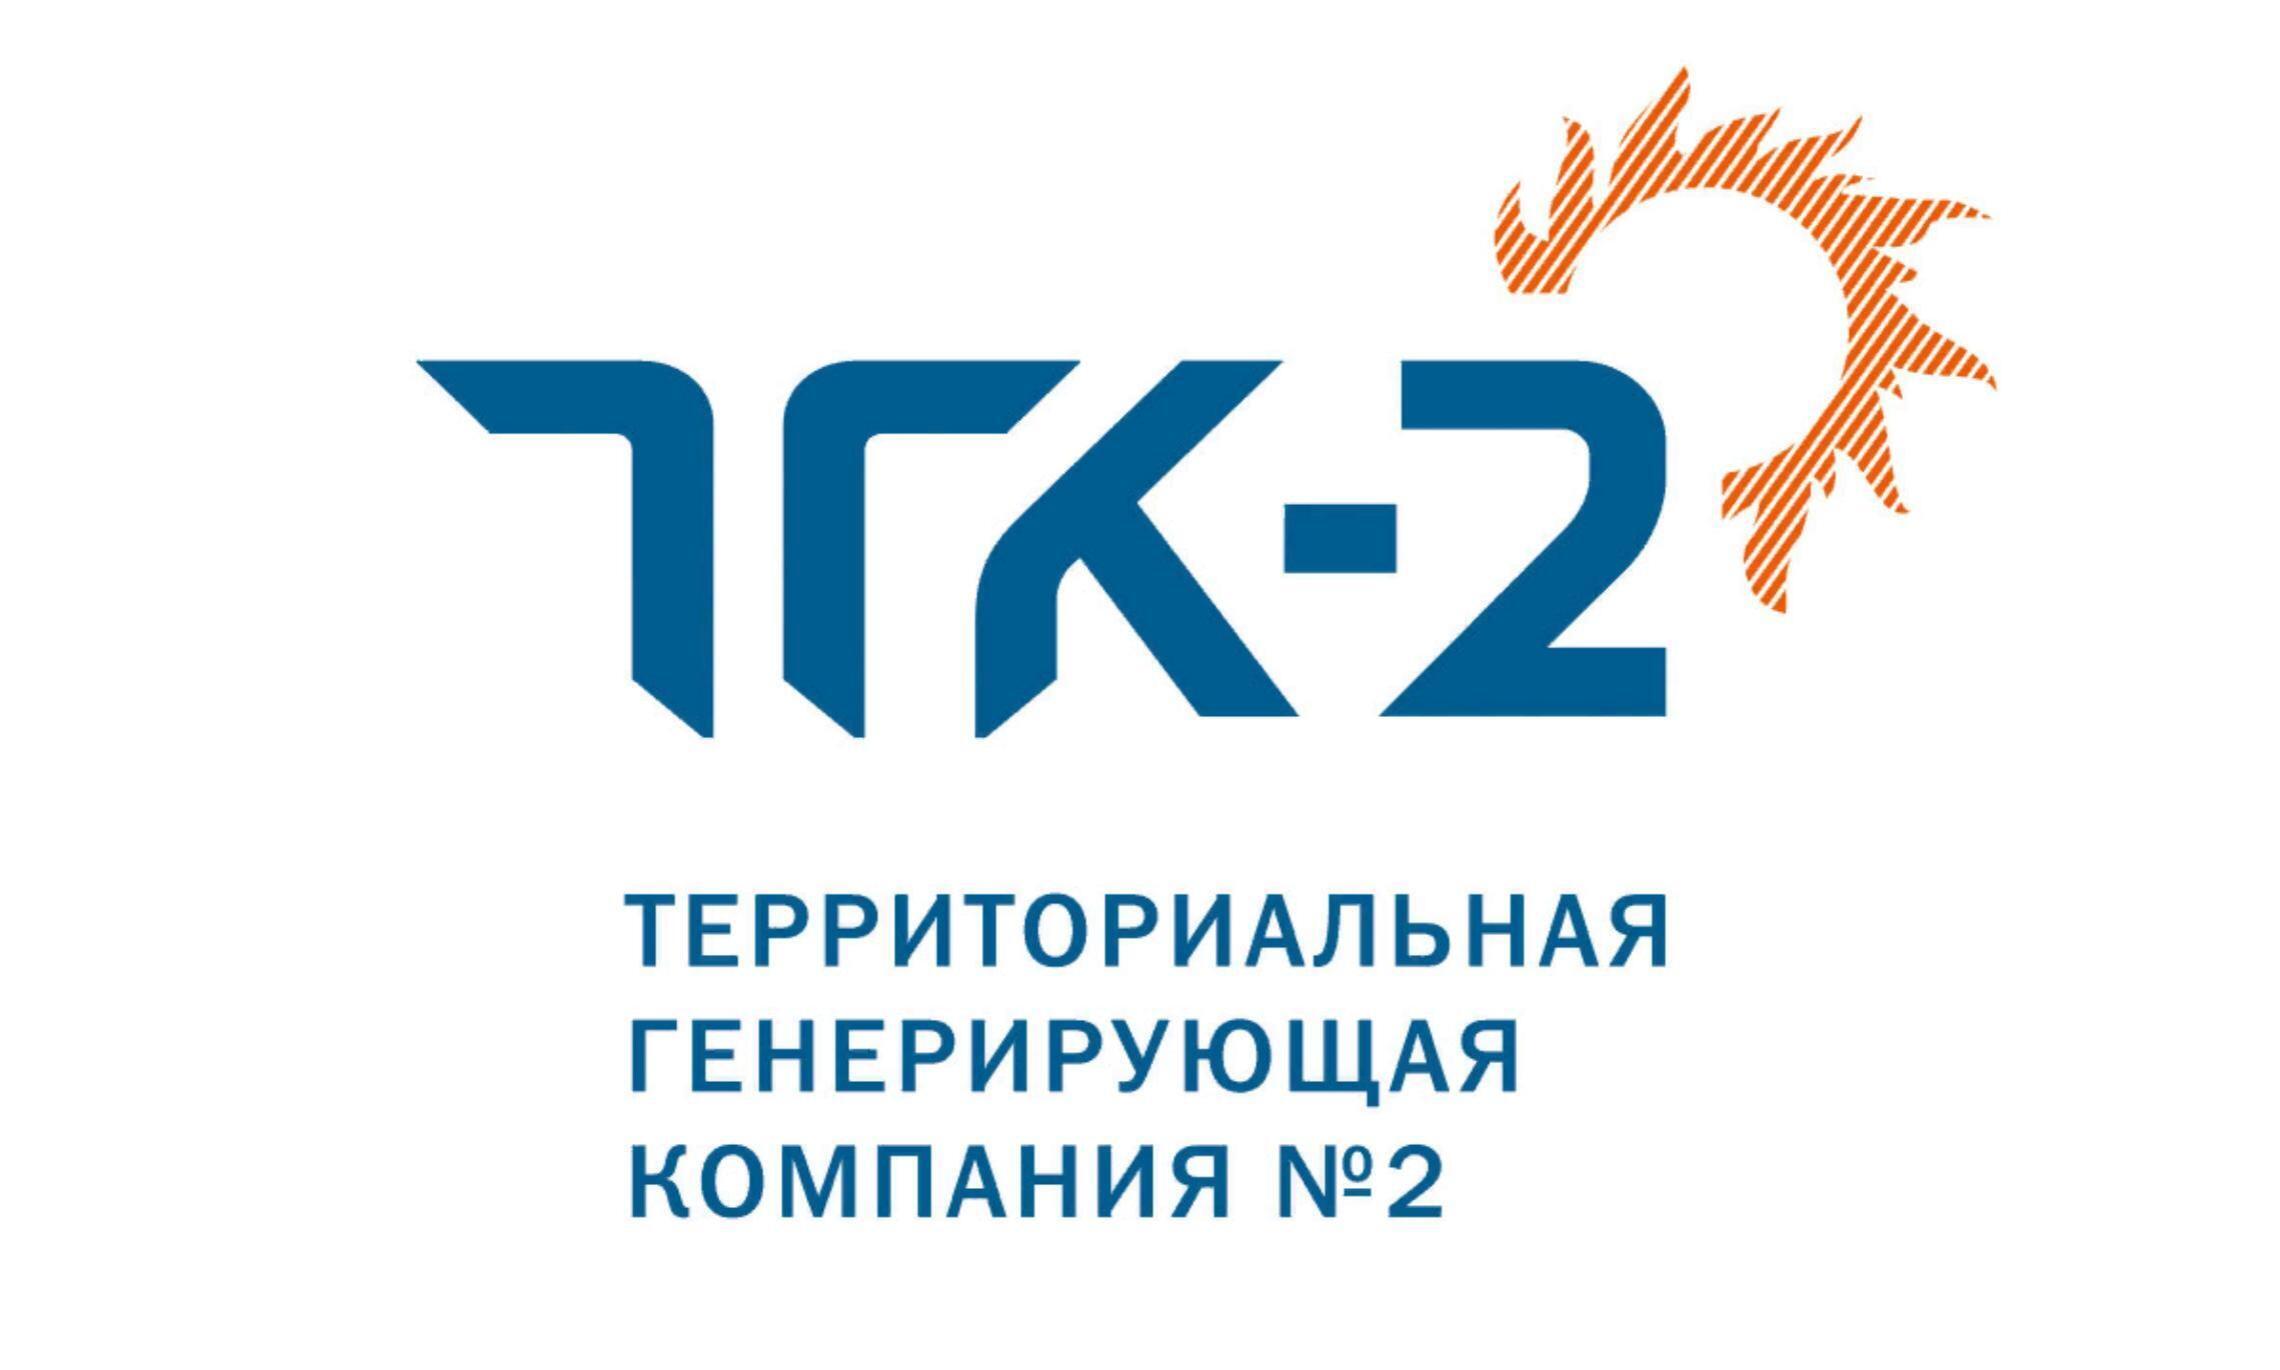 Генерирующая организация. ТГК-2 логотип. ТГК-2 Ярославль. Логотип территориальная генерирующая компания. ТГК-2 Северодвинск.